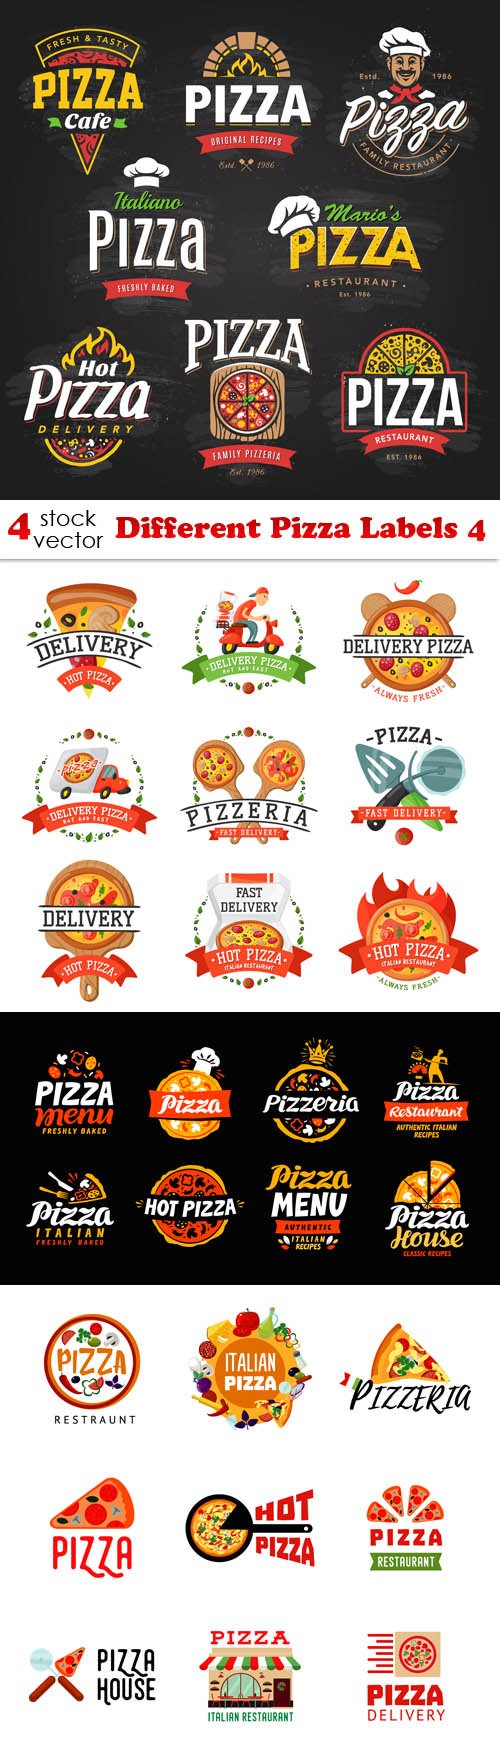 Vectors - Different Pizza Labels 4